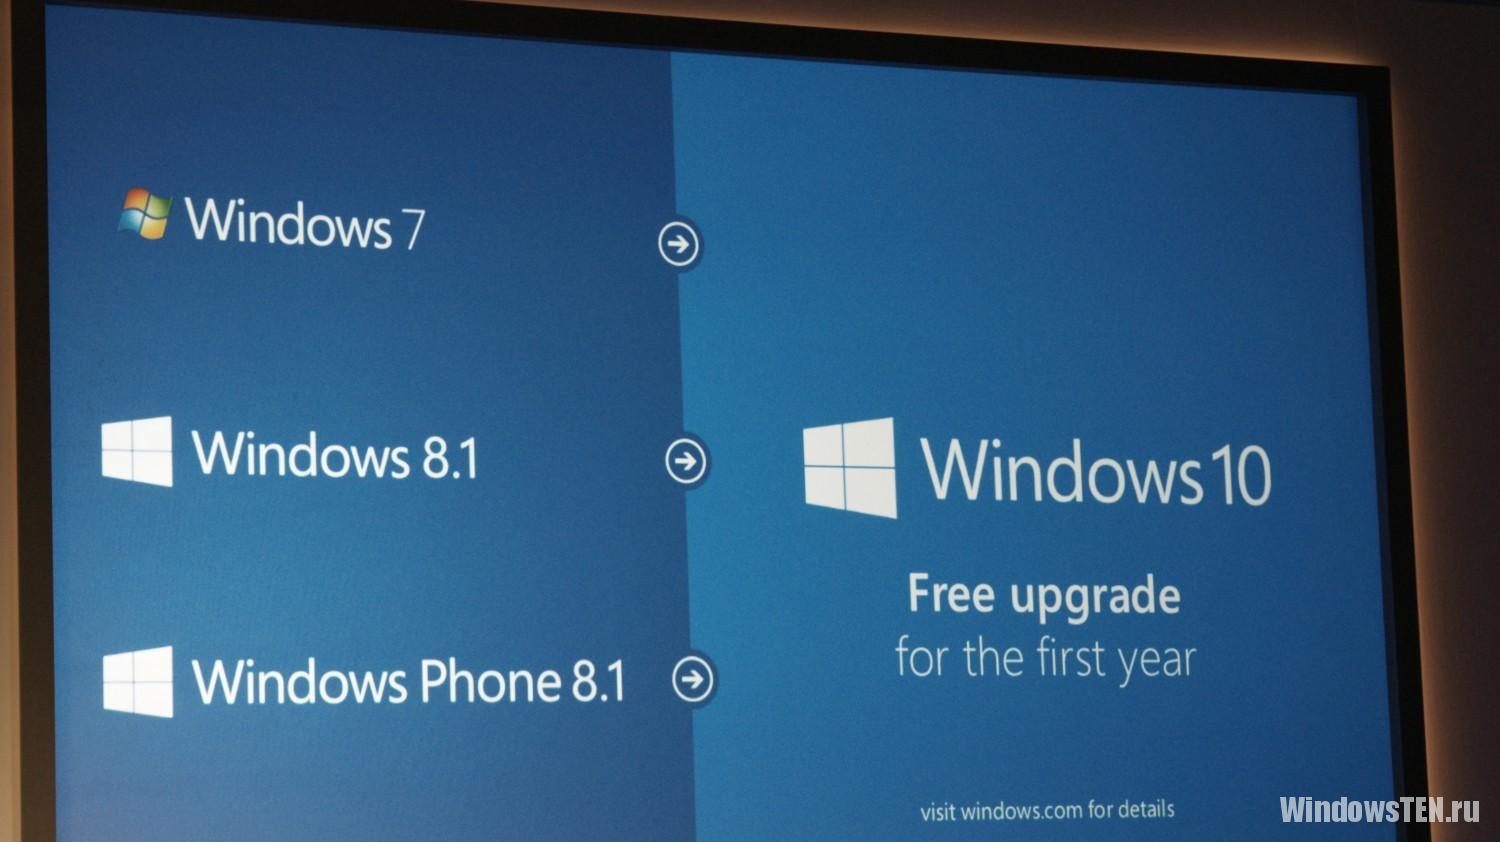 Бесплатное обновление до Windows 10